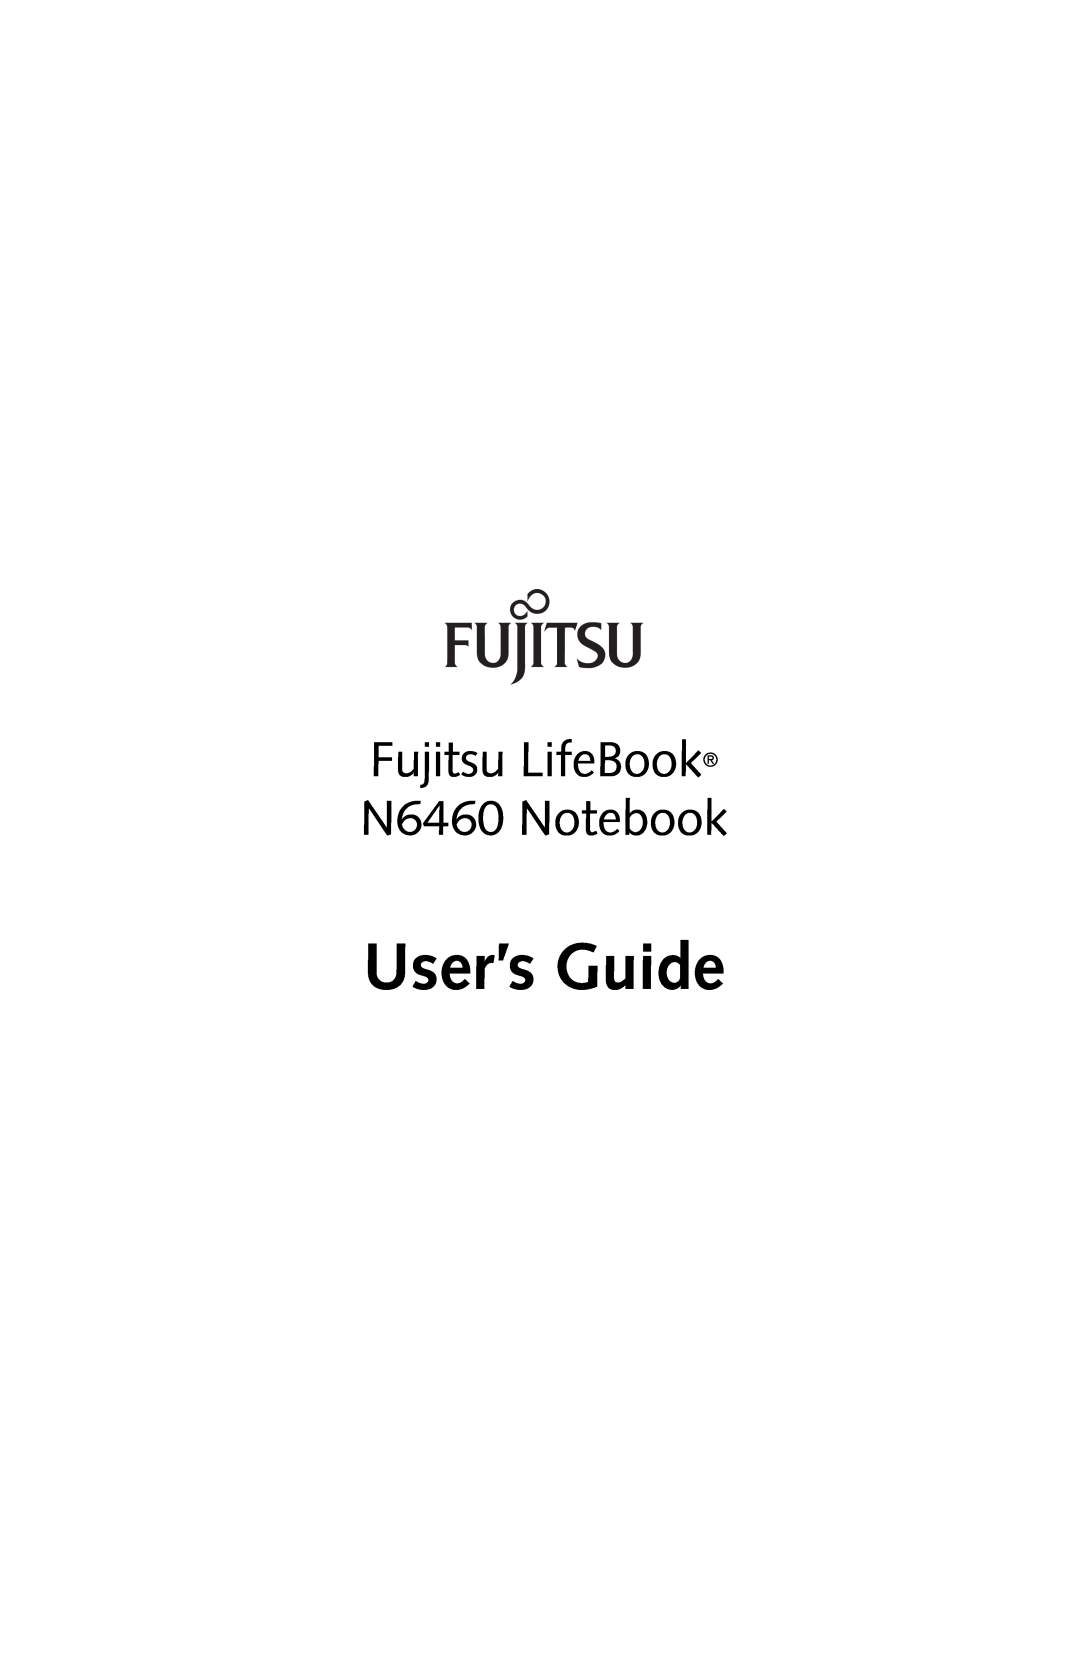 Fujitsu manual User’s Guide, Fujitsu LifeBook N6460 Notebook 